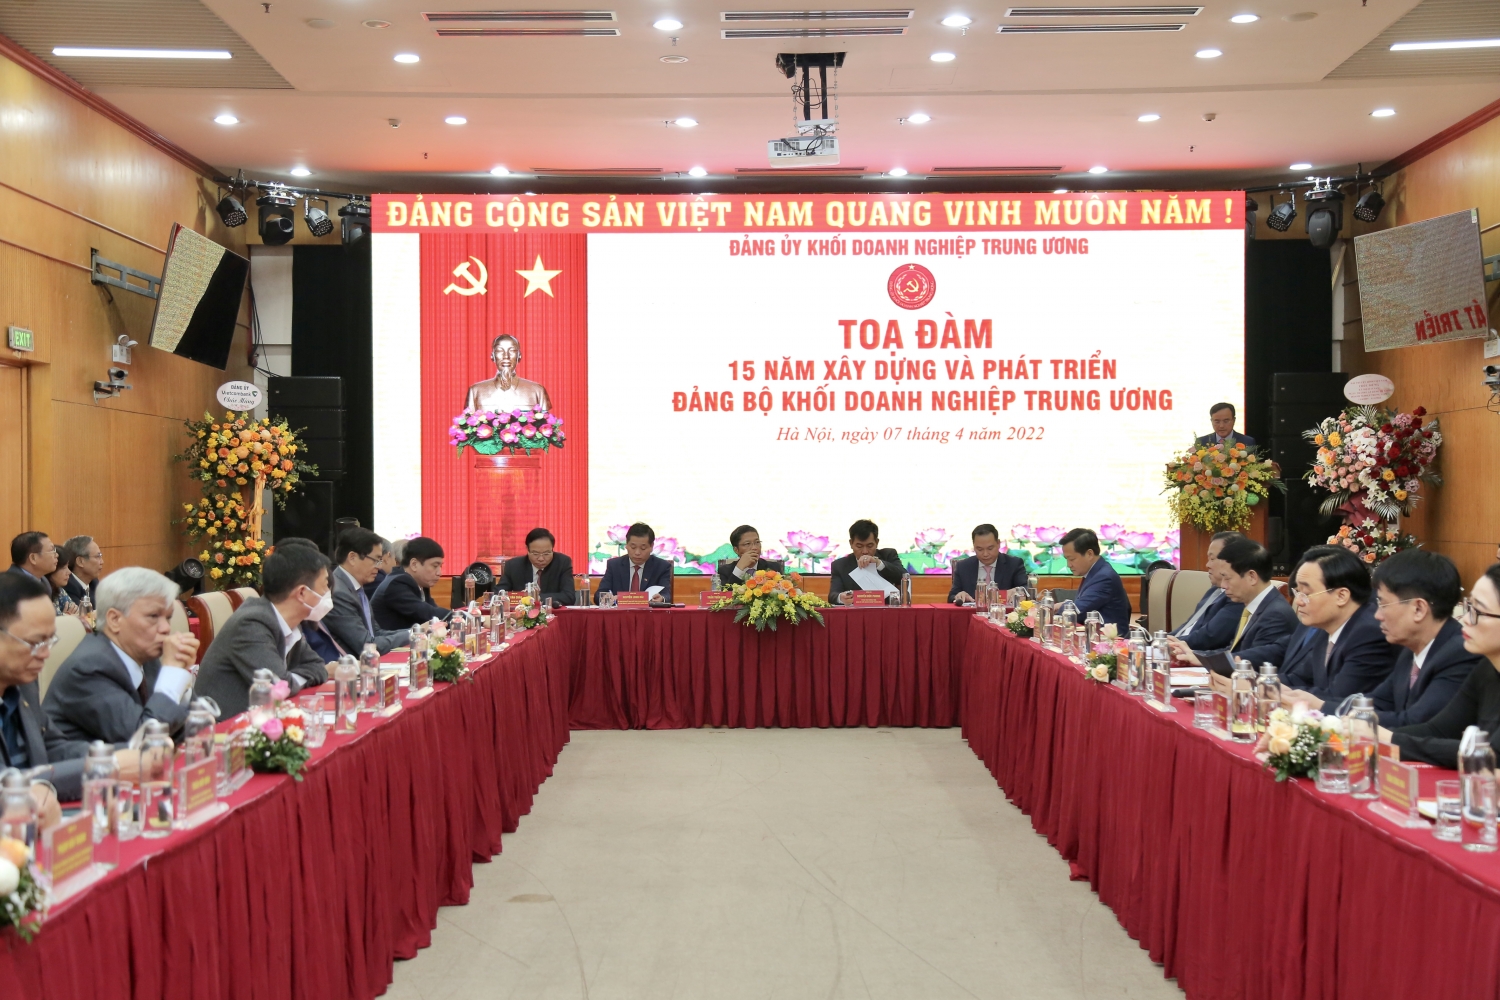 Tổng Giám đốc Petrovietnam Lê Mạnh Hùng nhận Kỷ niệm chương “Vì sự nghiệp xây dựng Đảng trong doanh nghiệp Việt Nam”


– DẦU KHÍ VIỆT NAM